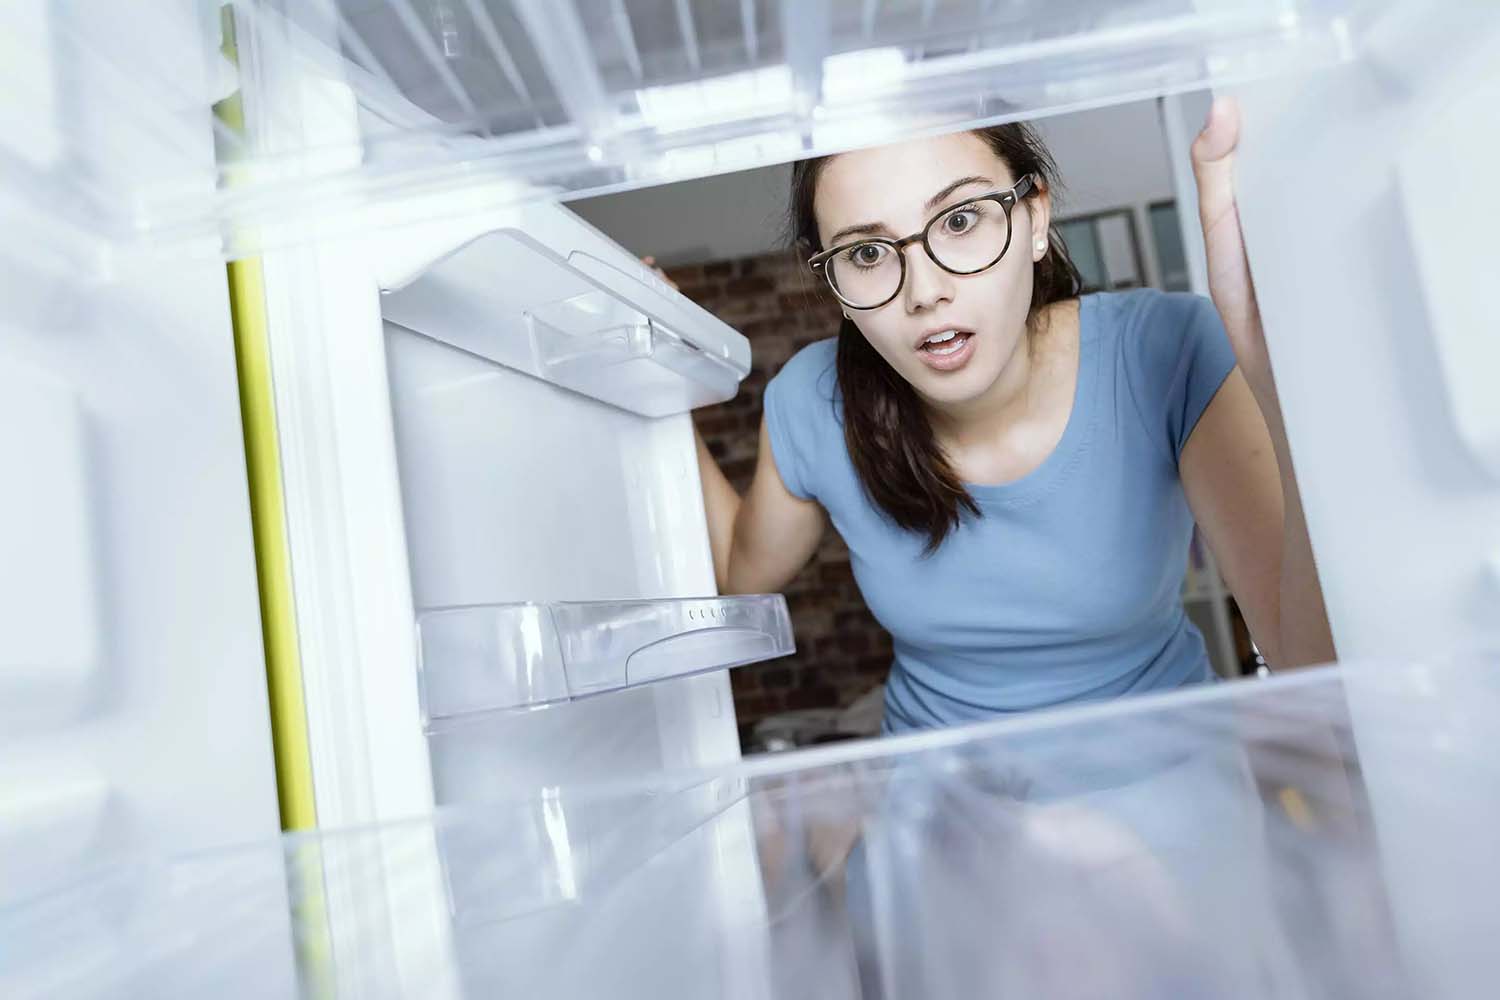 Mujer viendo el refrigerador vacío